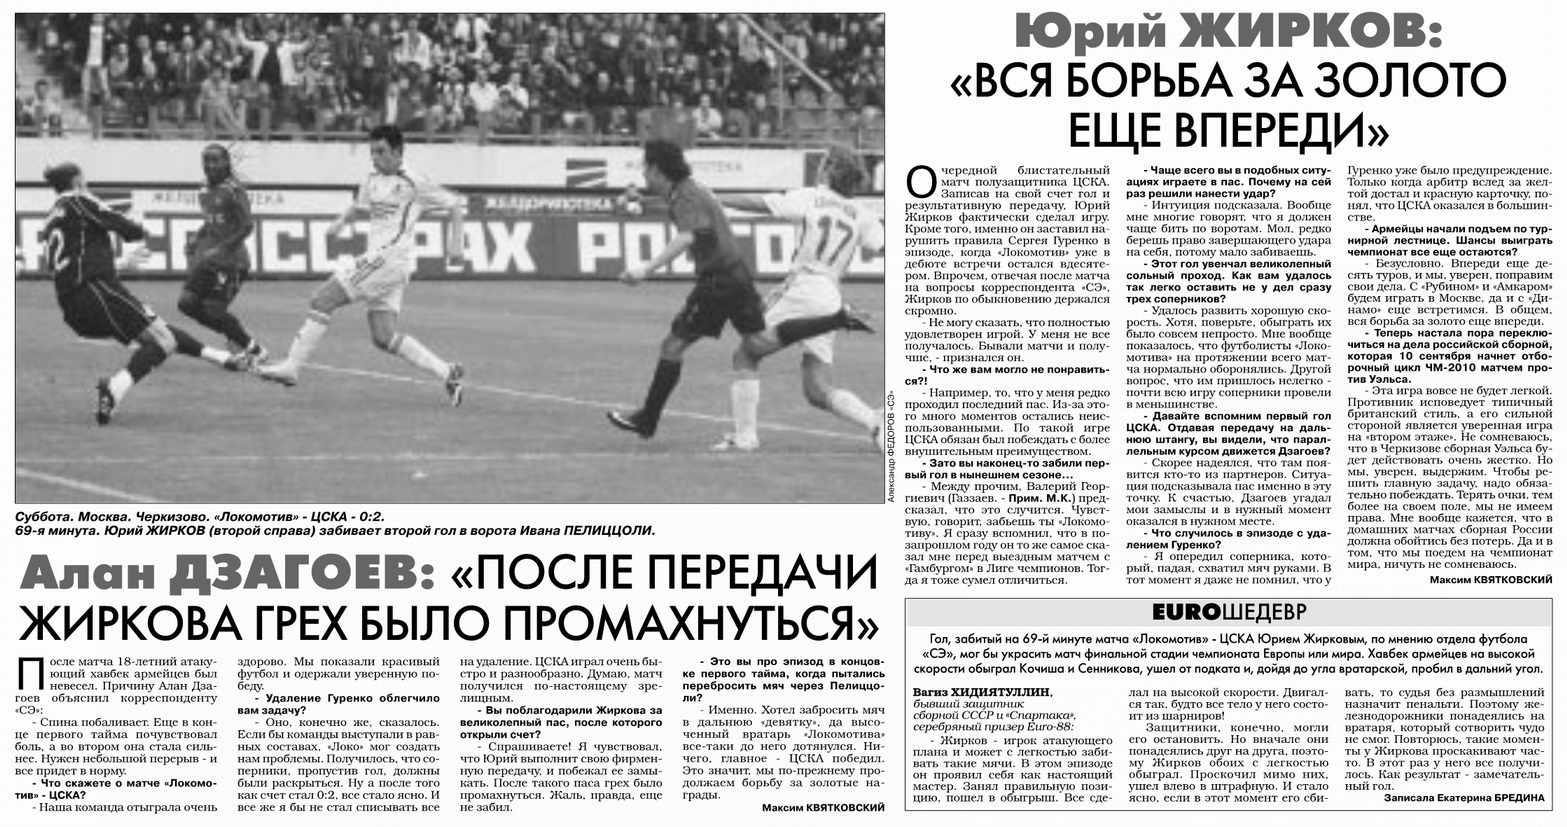 2008-08-30.LokomotivM-CSKA.1